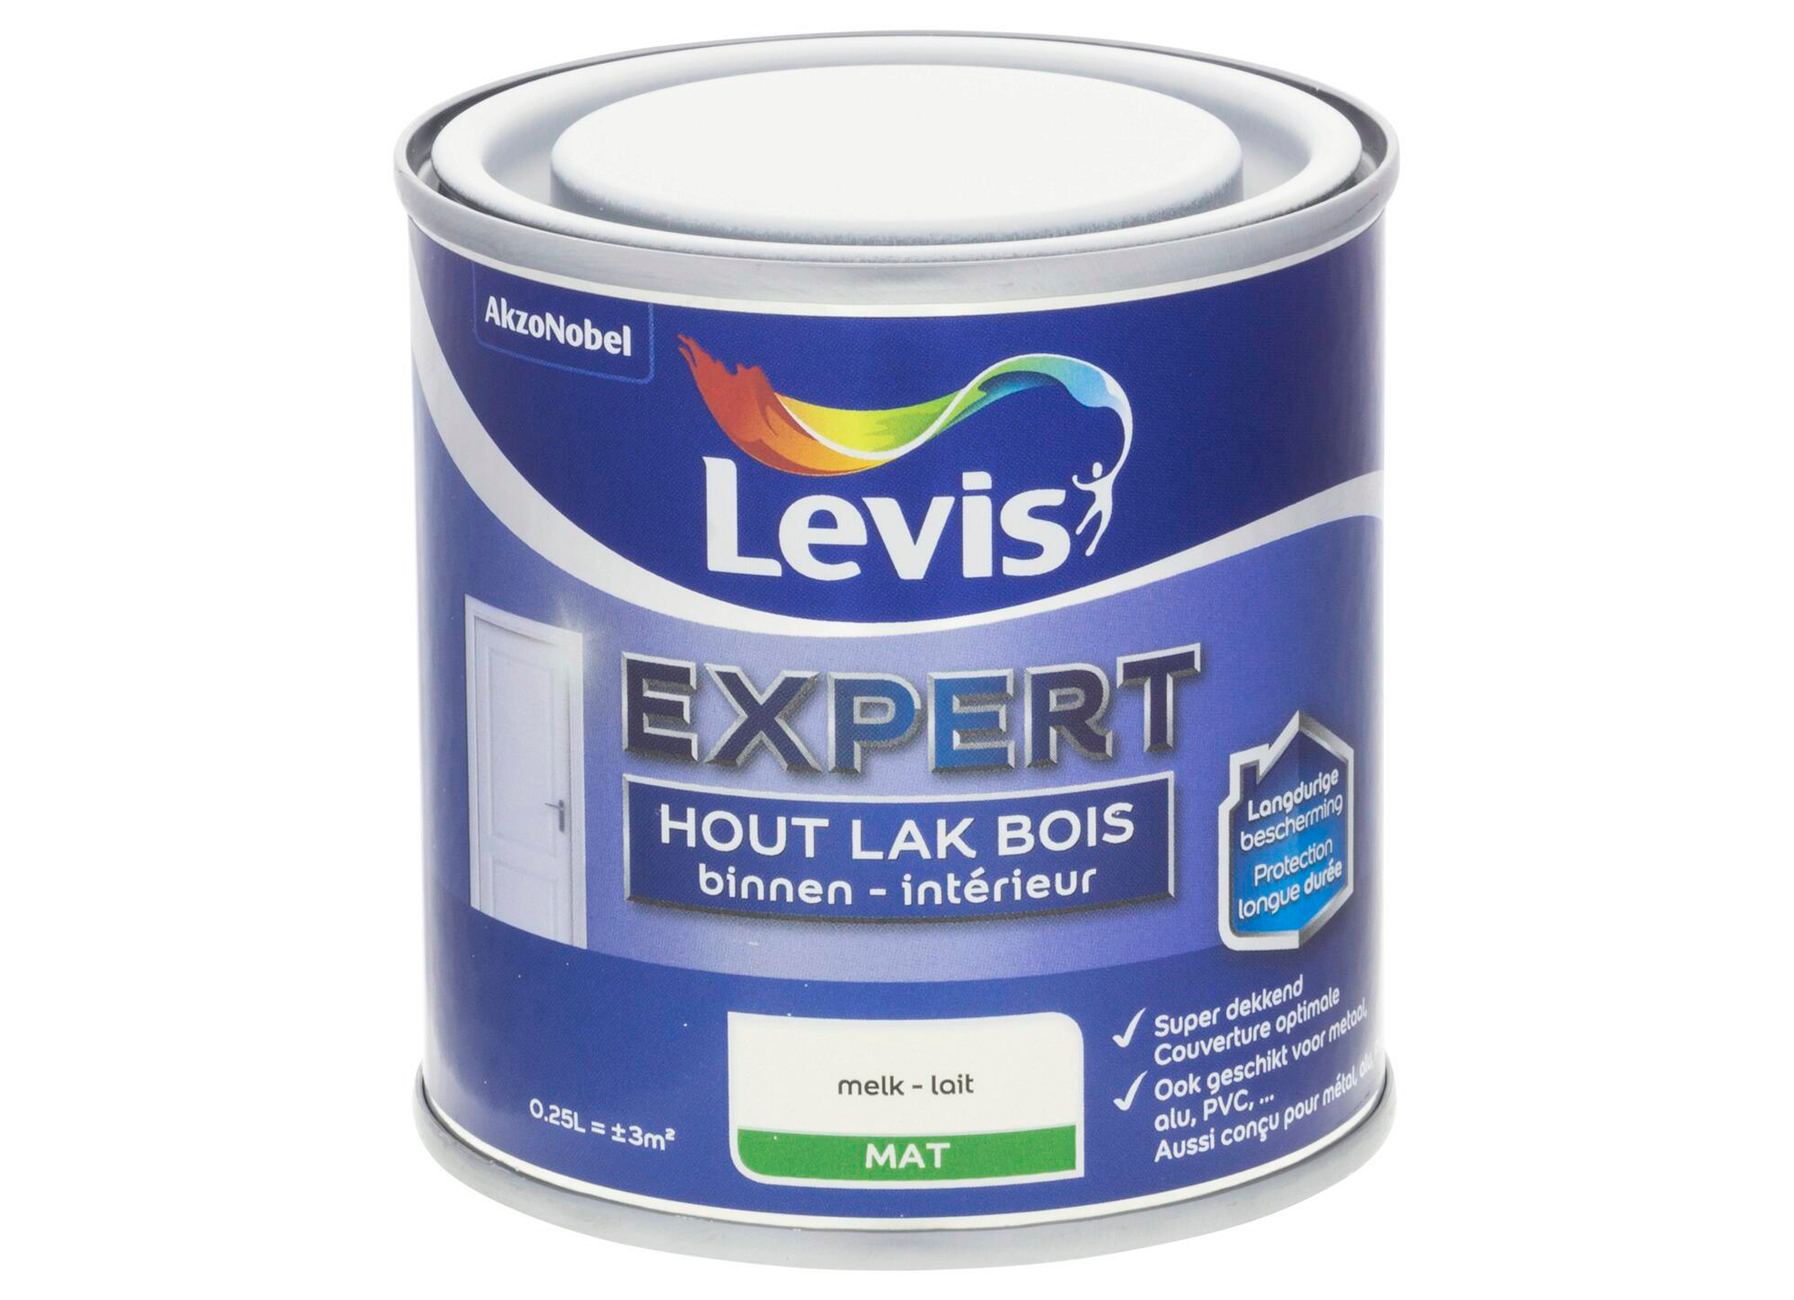 LEVIS EXPERT LAK BOIS INTERIEUR MAT LAIT 0,25L